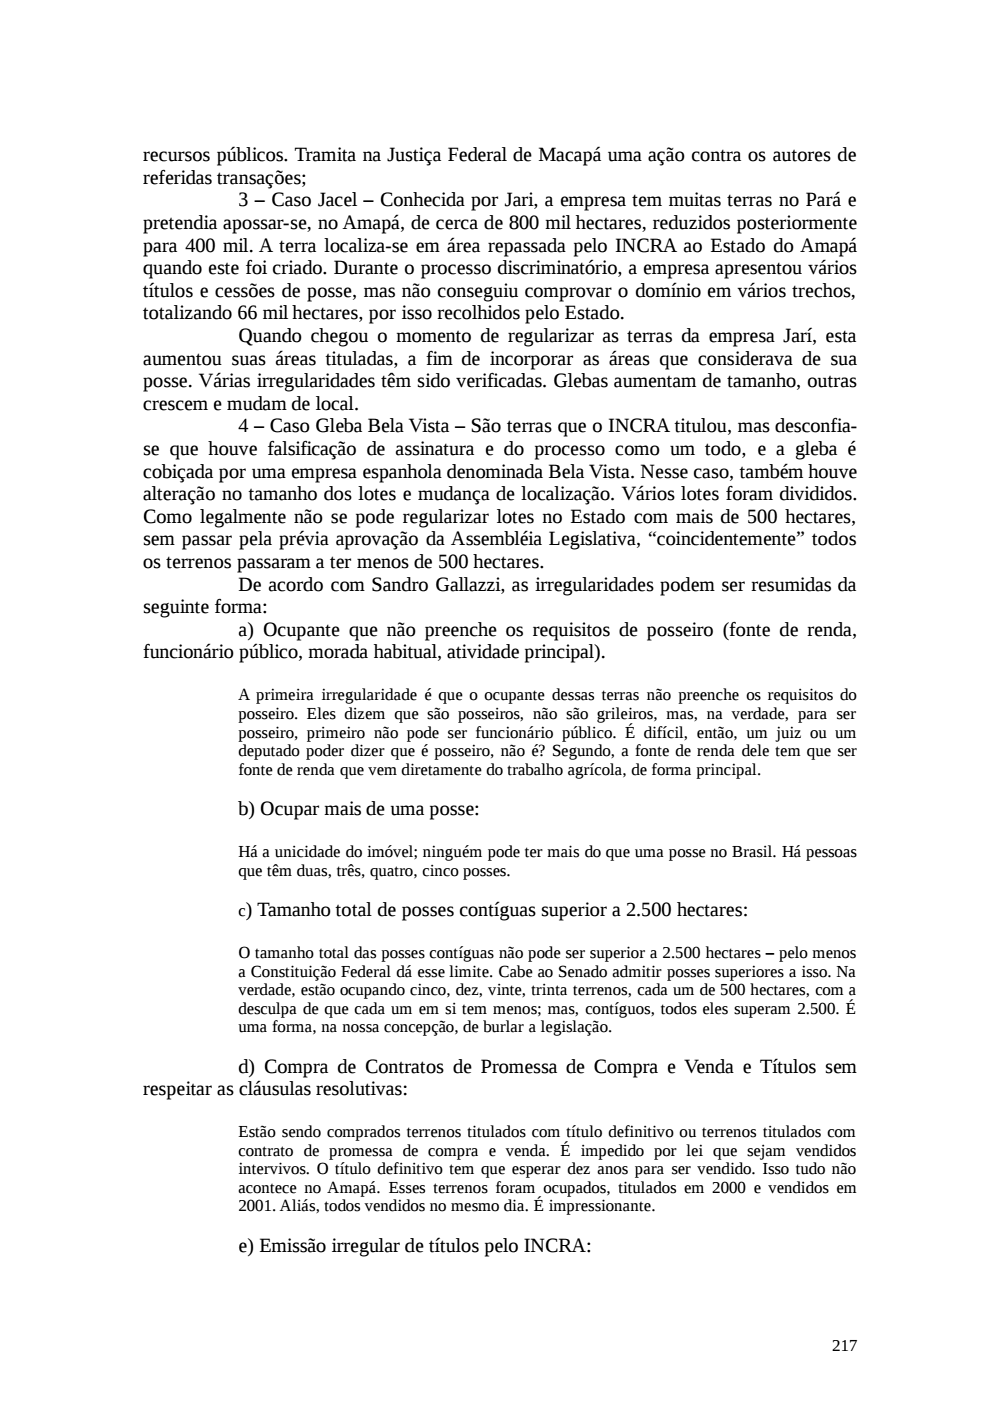 Page 217 from Relatório final da comissão